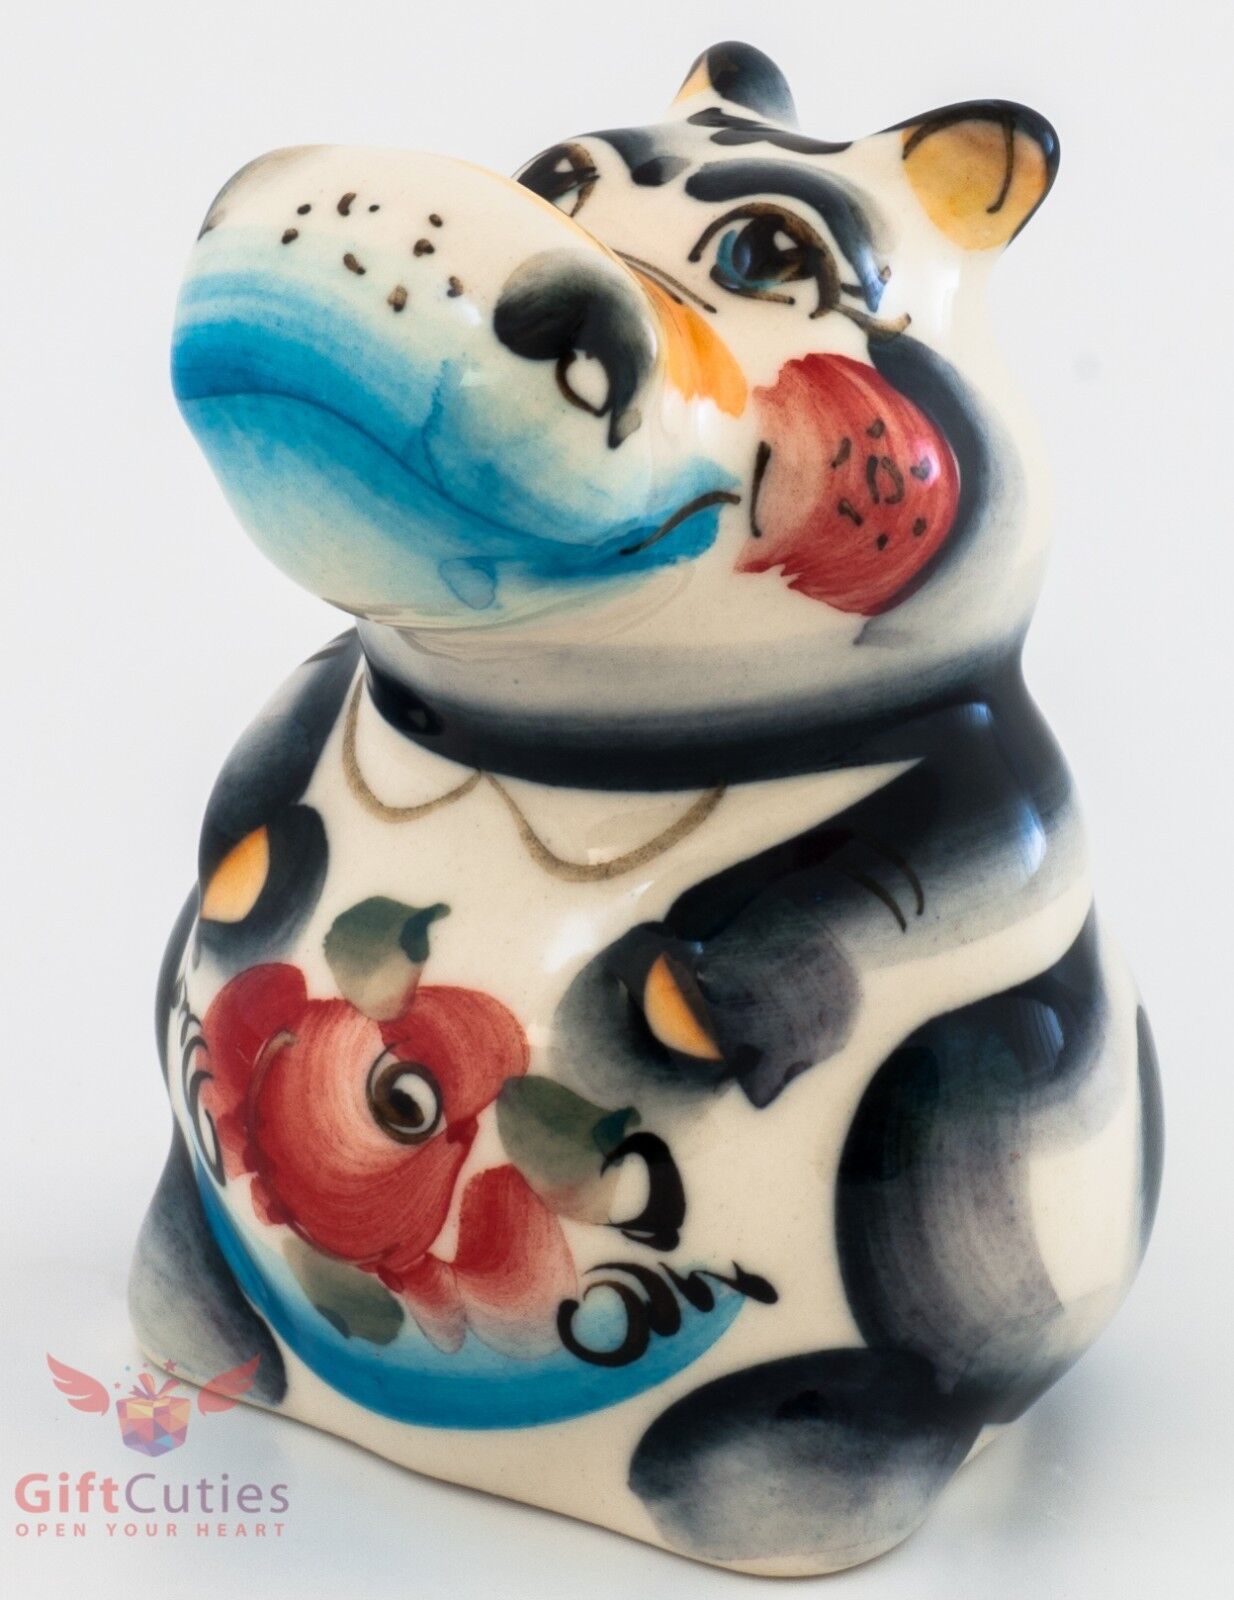 Hippopotamus Gzhel porcelain figurine hippo souvenir handmade and hand-painted